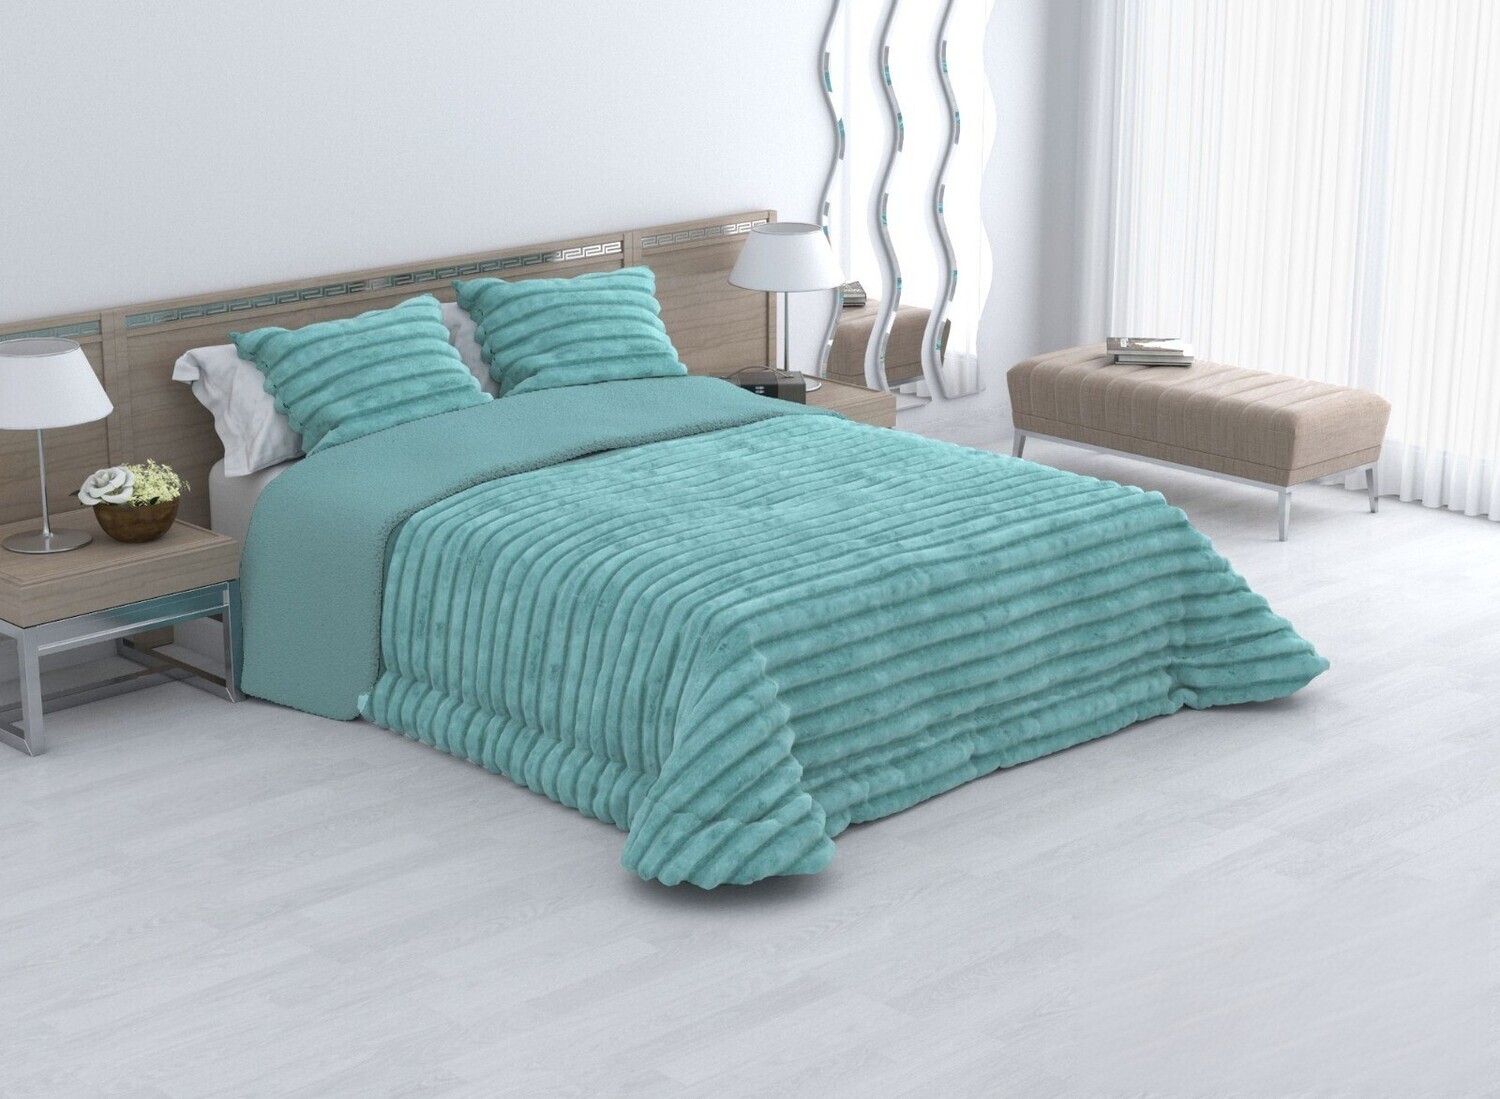 Edredones cama 150 con borreguito color, Sedalina & Borreguillo